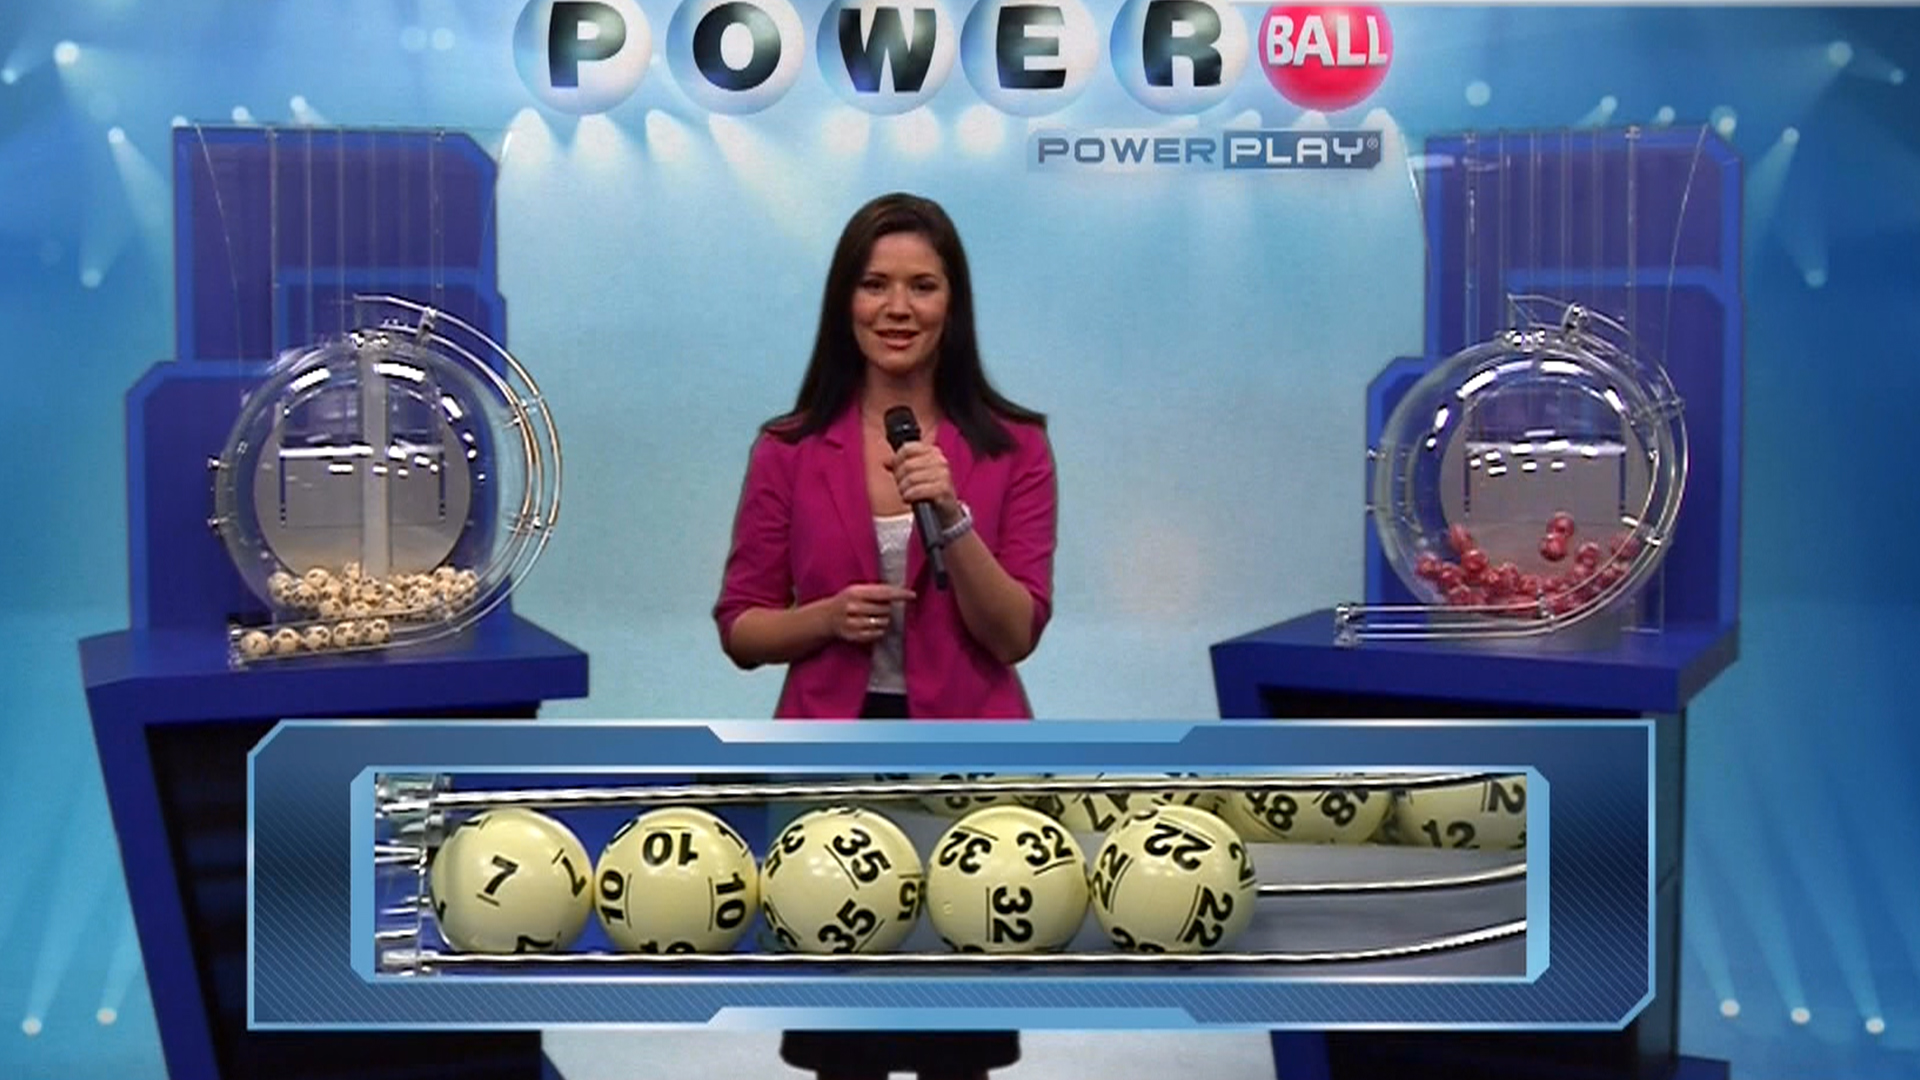 Jackpot! Ticket claims $400 million powerball